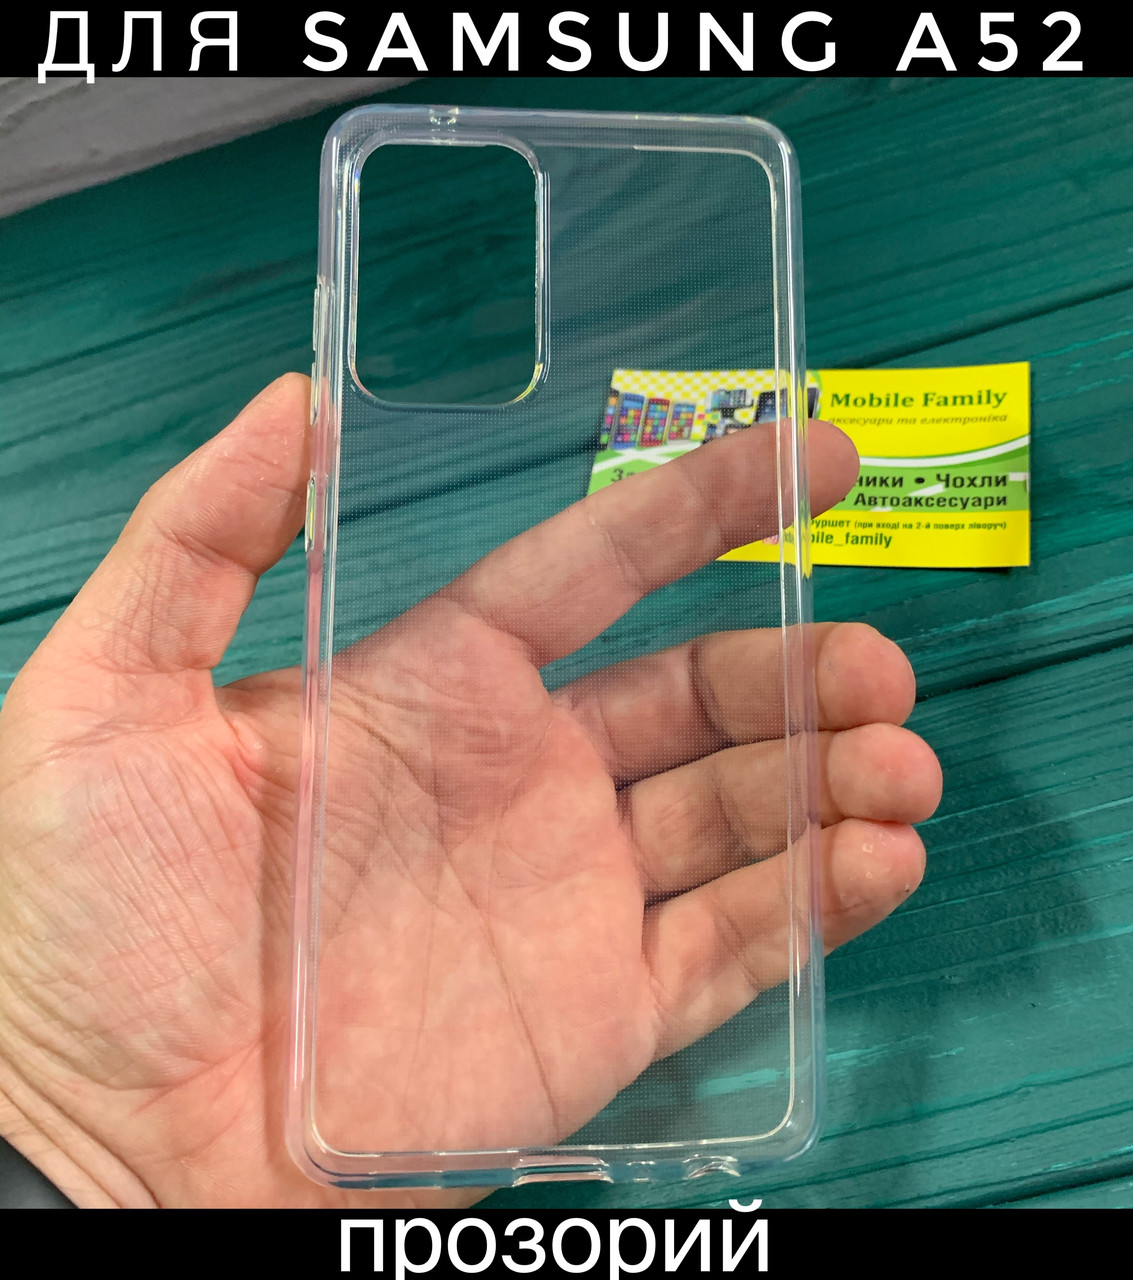 

Прозрачный чехол Samsung A52 самсунг а52 прозорий силикон